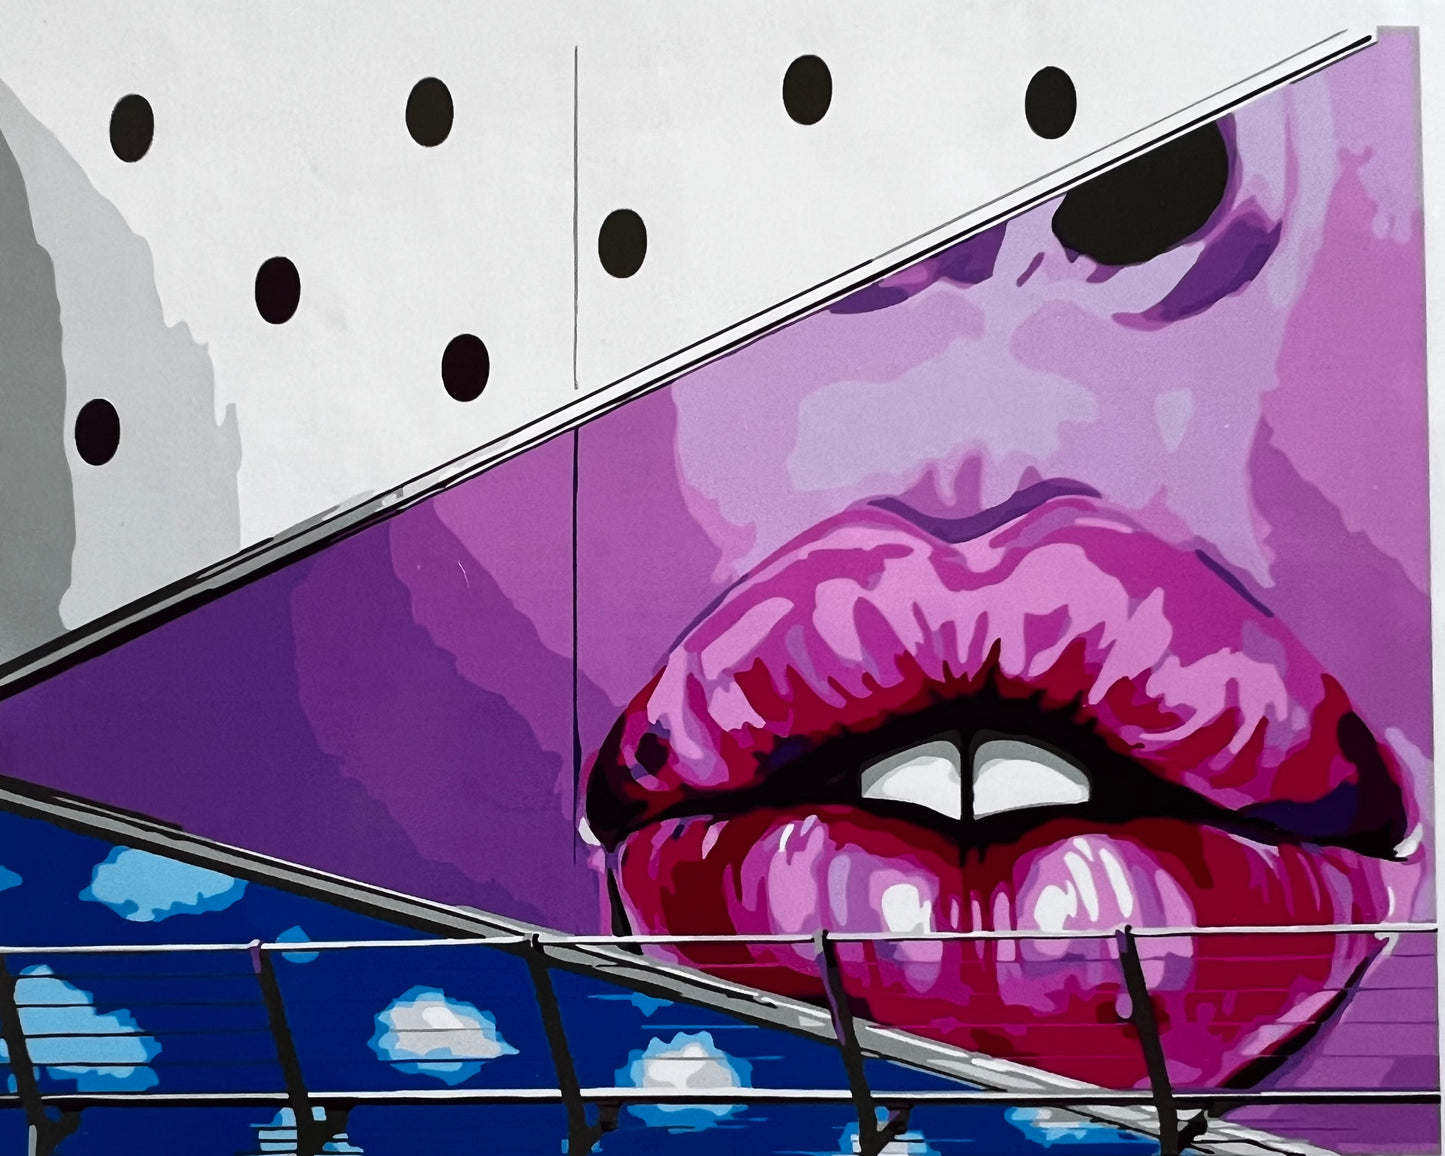 Graffiti Lips